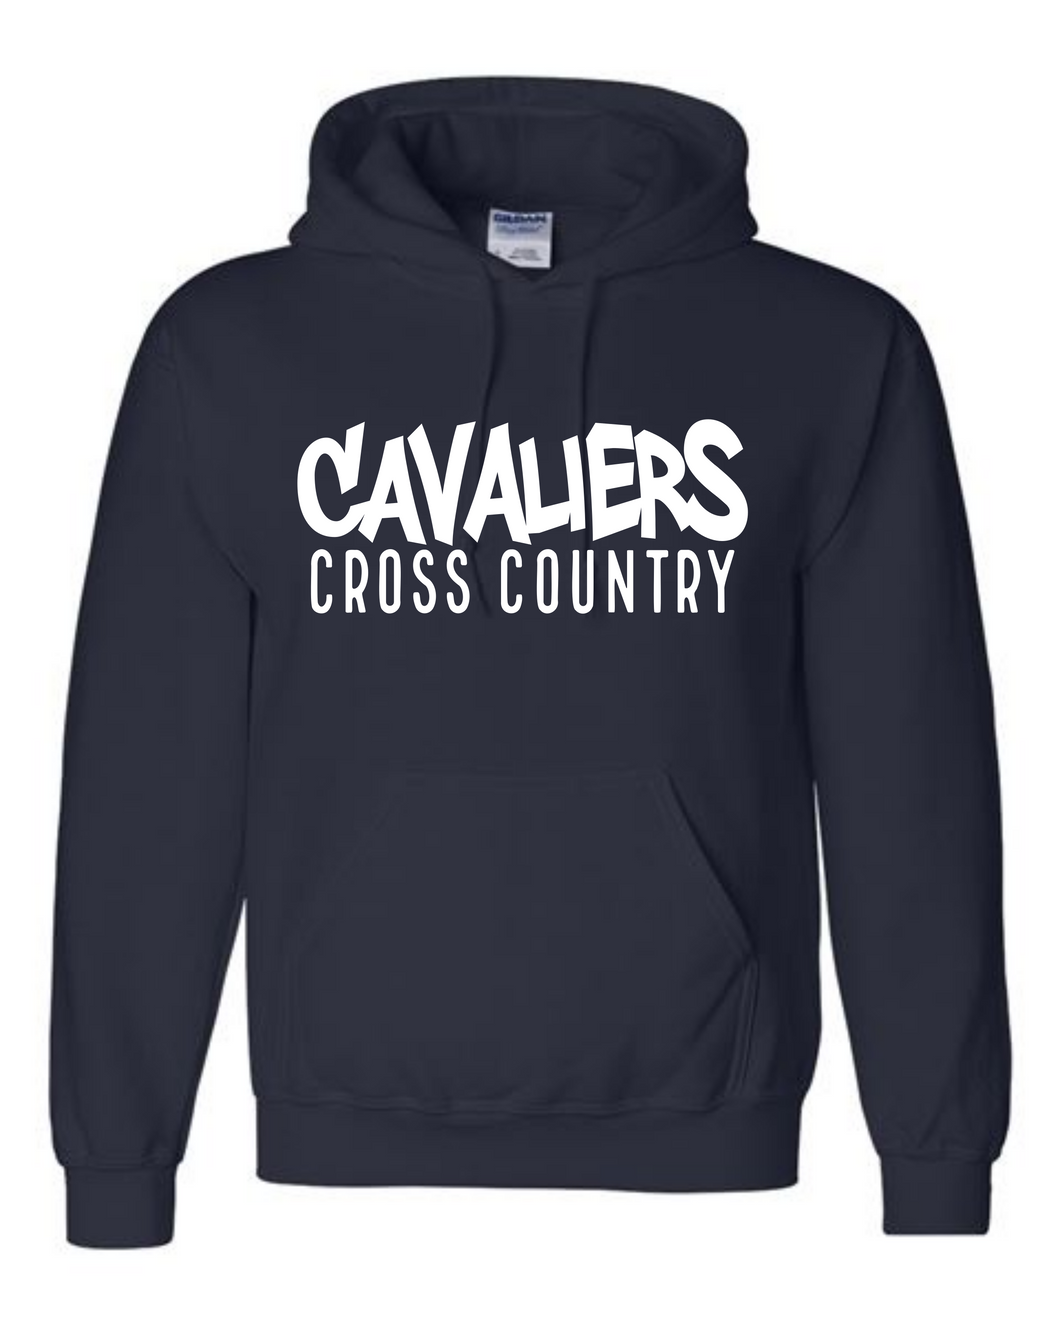 Cavaliers Cross Country Hoodie